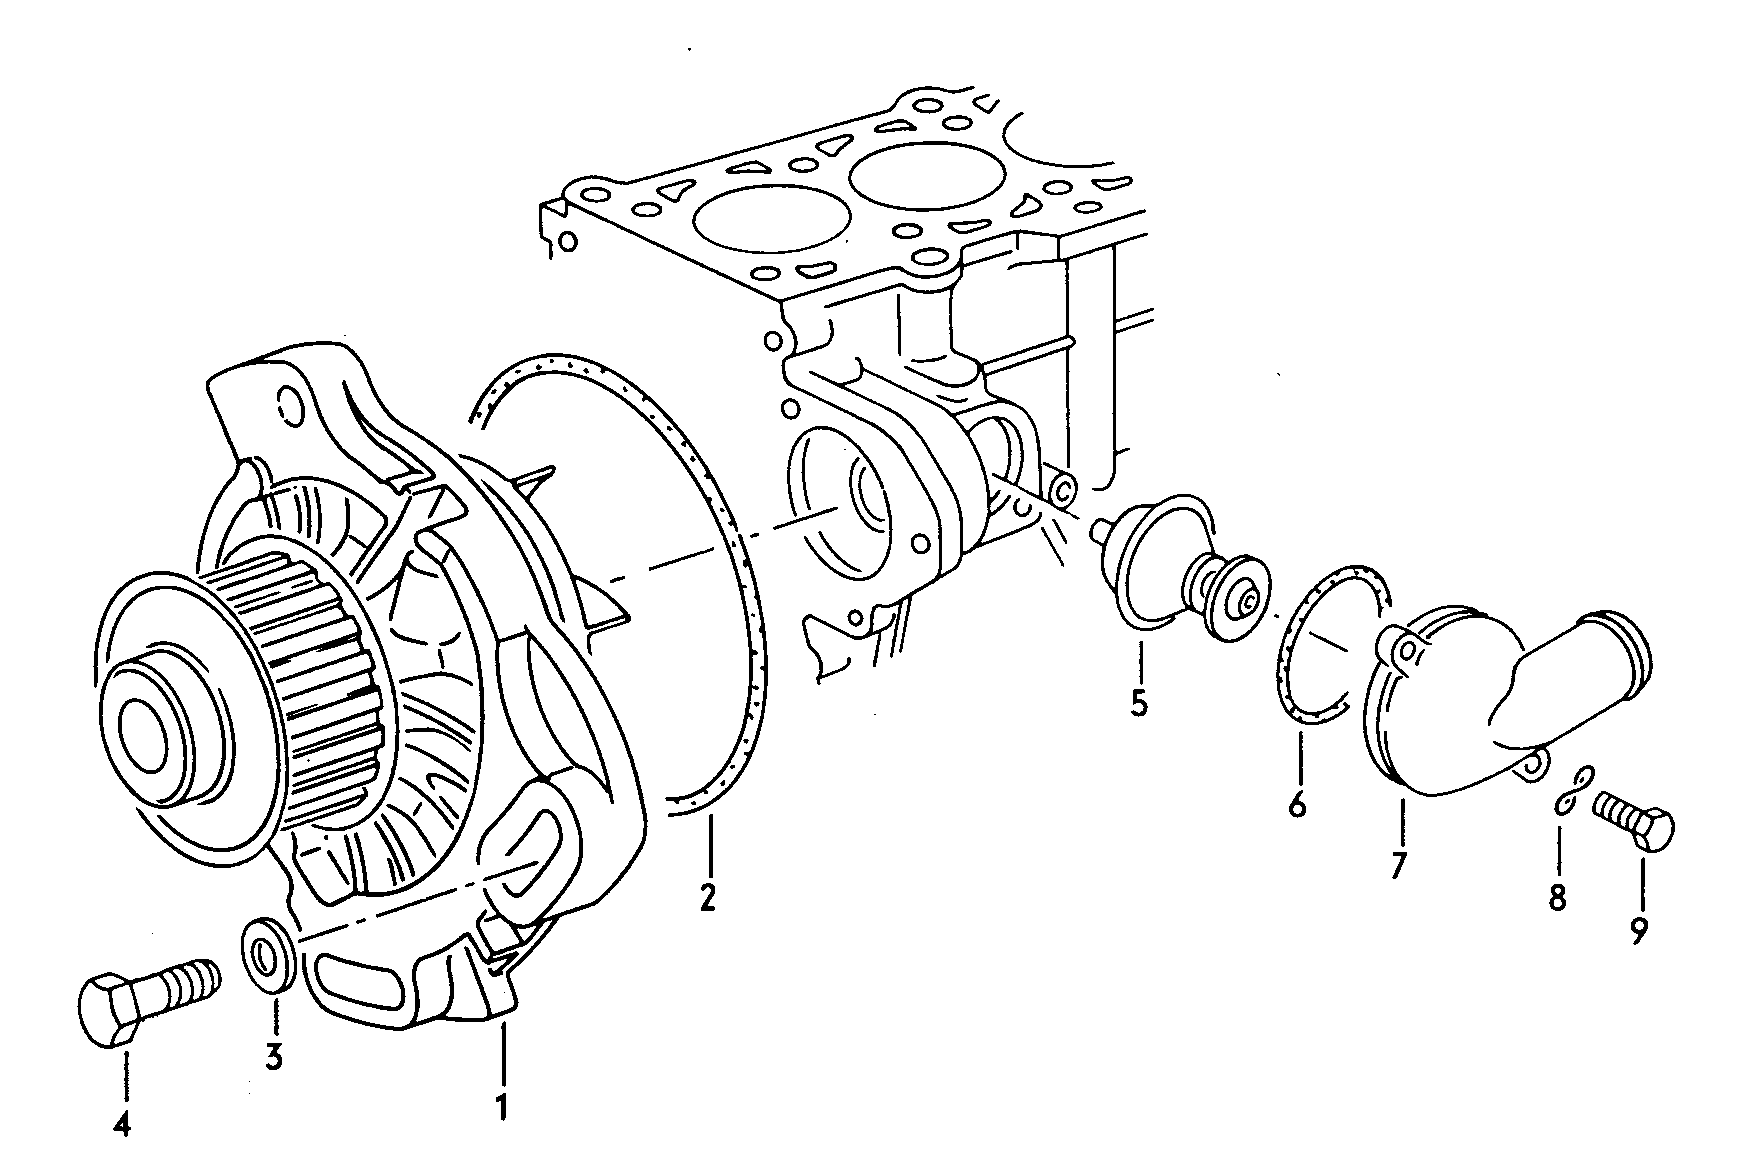 pompa liq. raff. 2,0-2,5l - Audi 100/Avant - a100